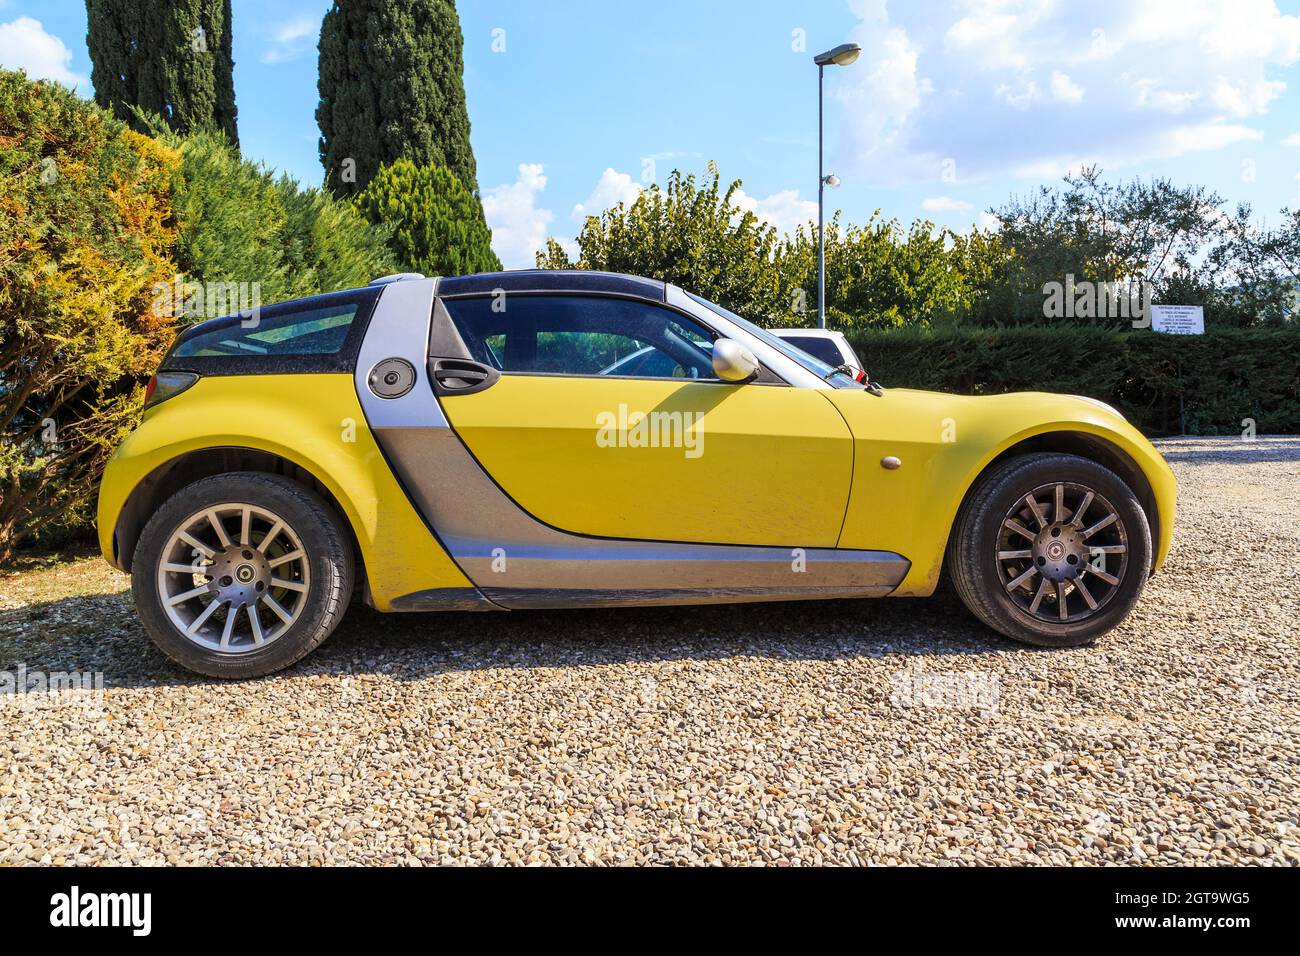 TOSCANA, ITALIA - 15 SETTEMBRE 2018: Si tratta di una vettura sportiva Smart Roadster, prodotta da una famosa azienda tedesca. Foto Stock